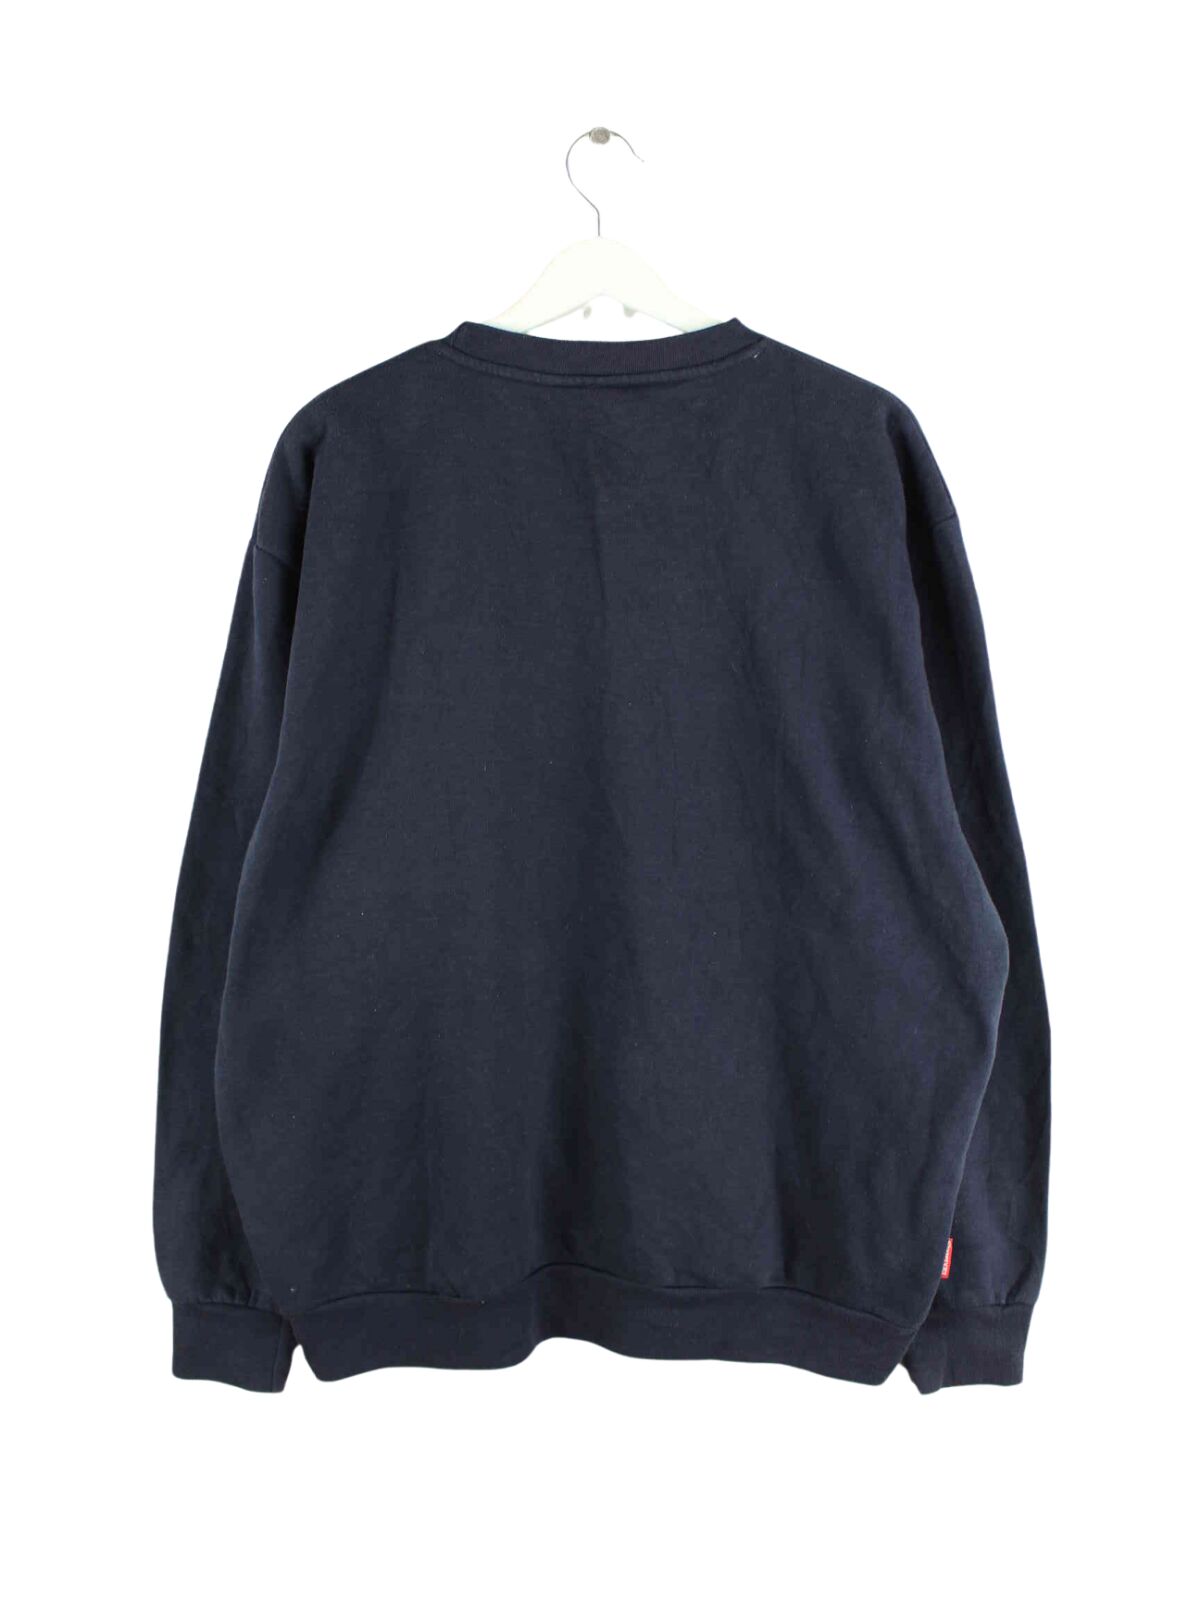 Slazenger Basic Sweater Blau L (back image)